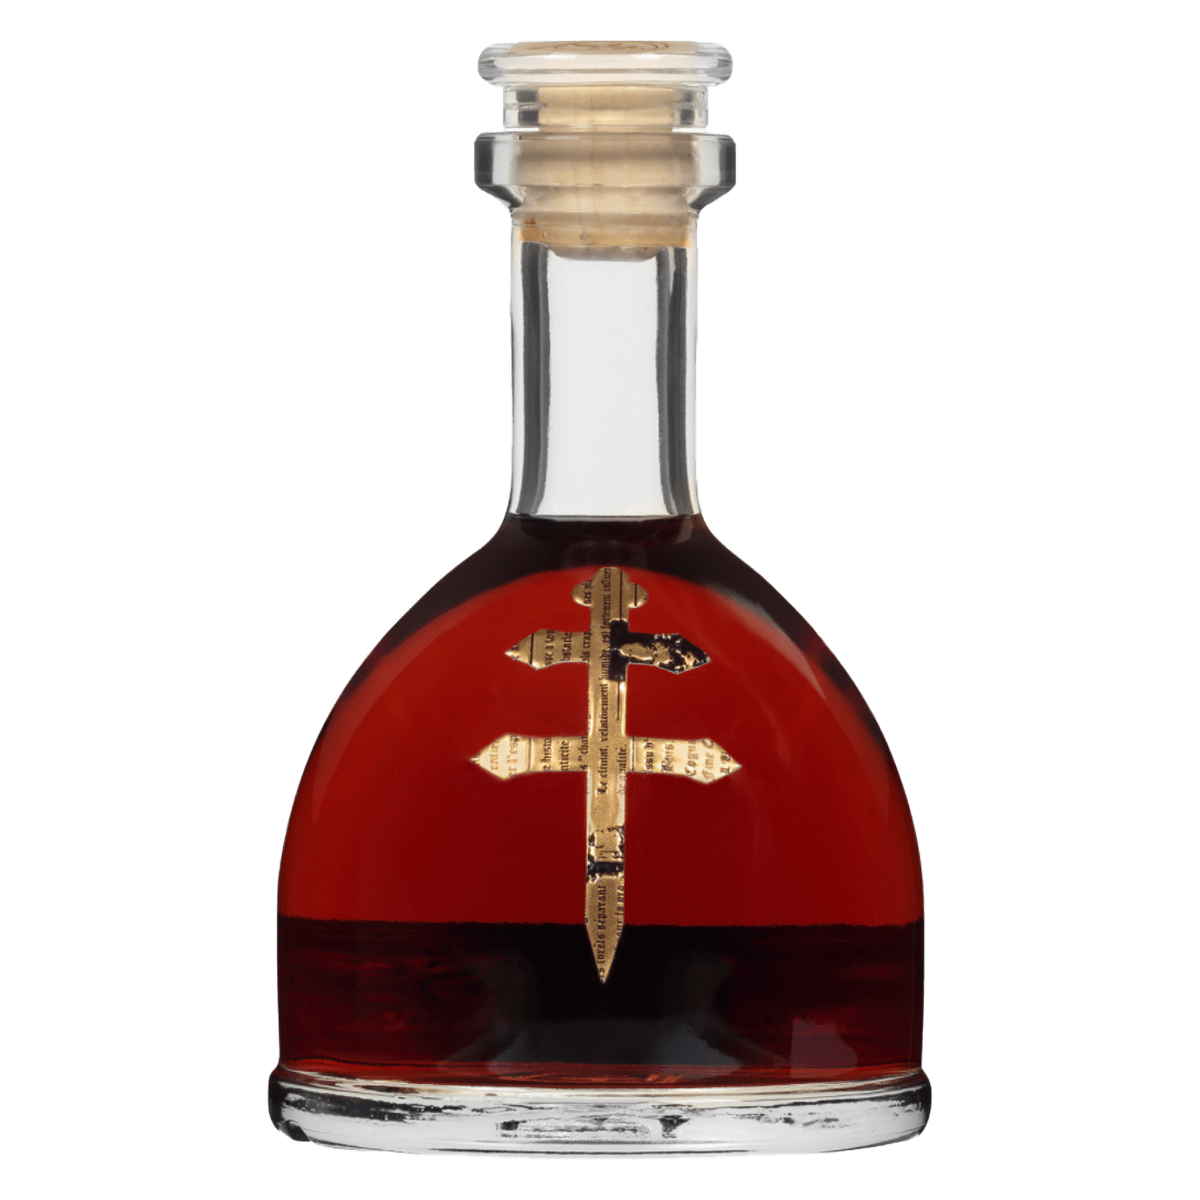 D'usse VSOP Cognac by Jay-Z 375ml - Barbank